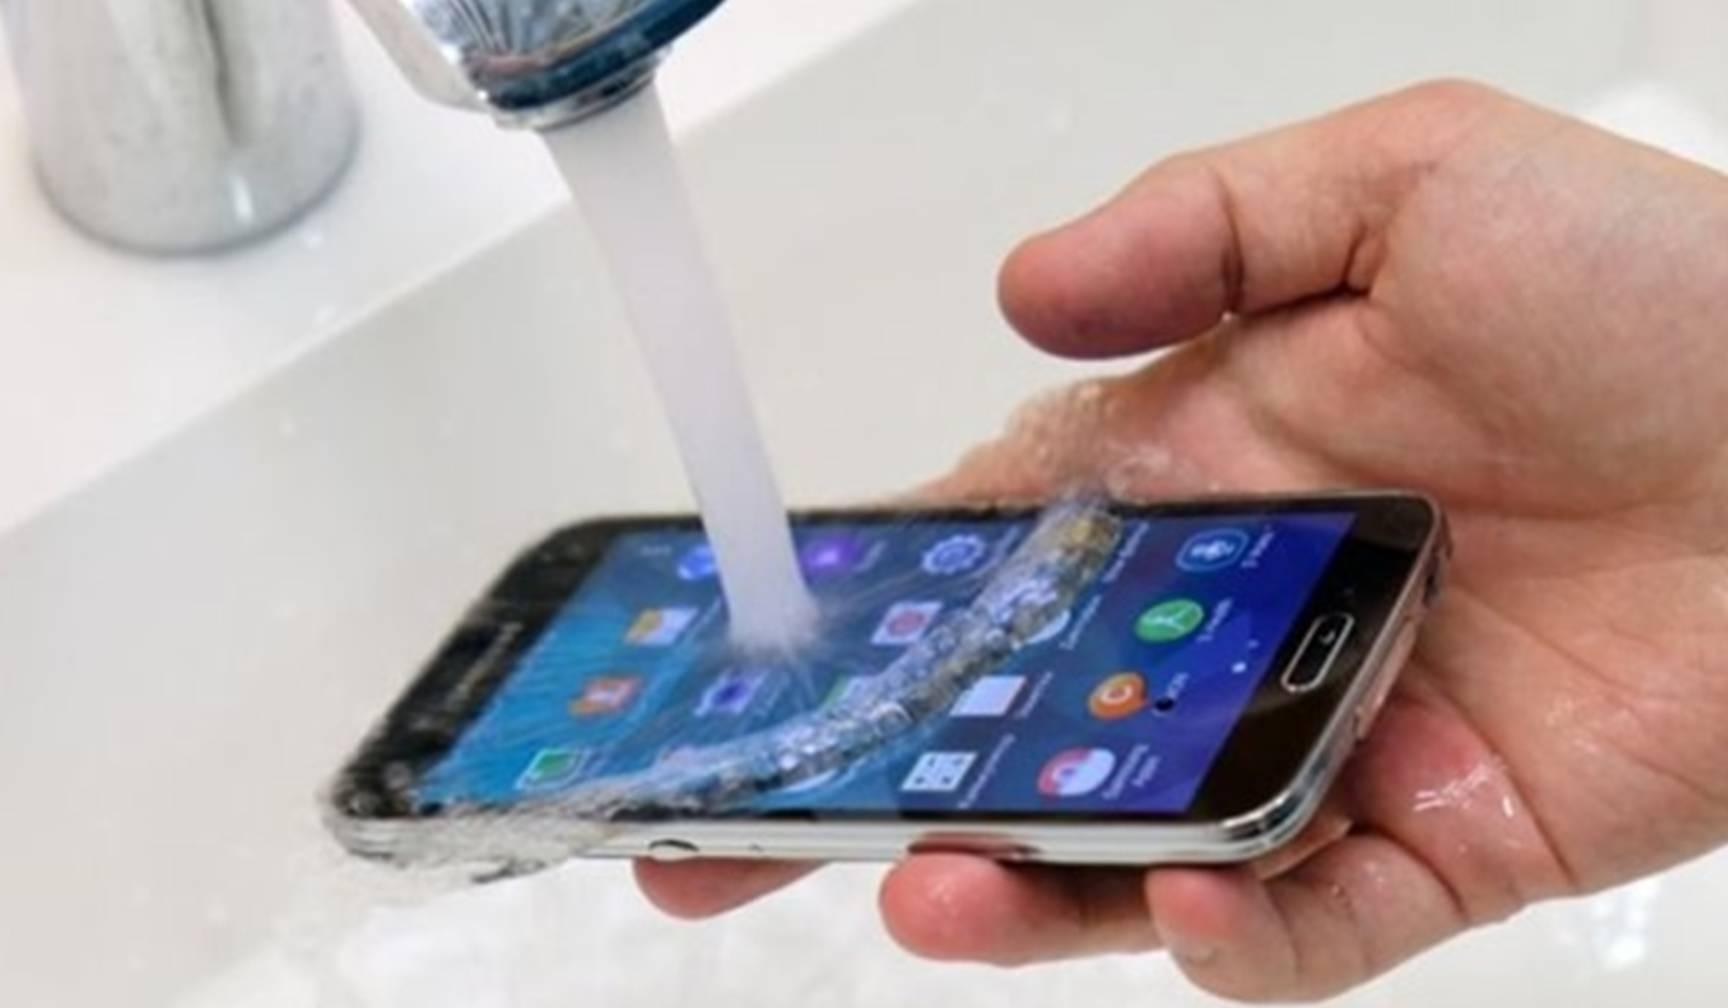 अब पता लग जाएगा कि आपका फोन पानी में सुरक्षित रह पाएगा या नहीं, जानिए कैसे